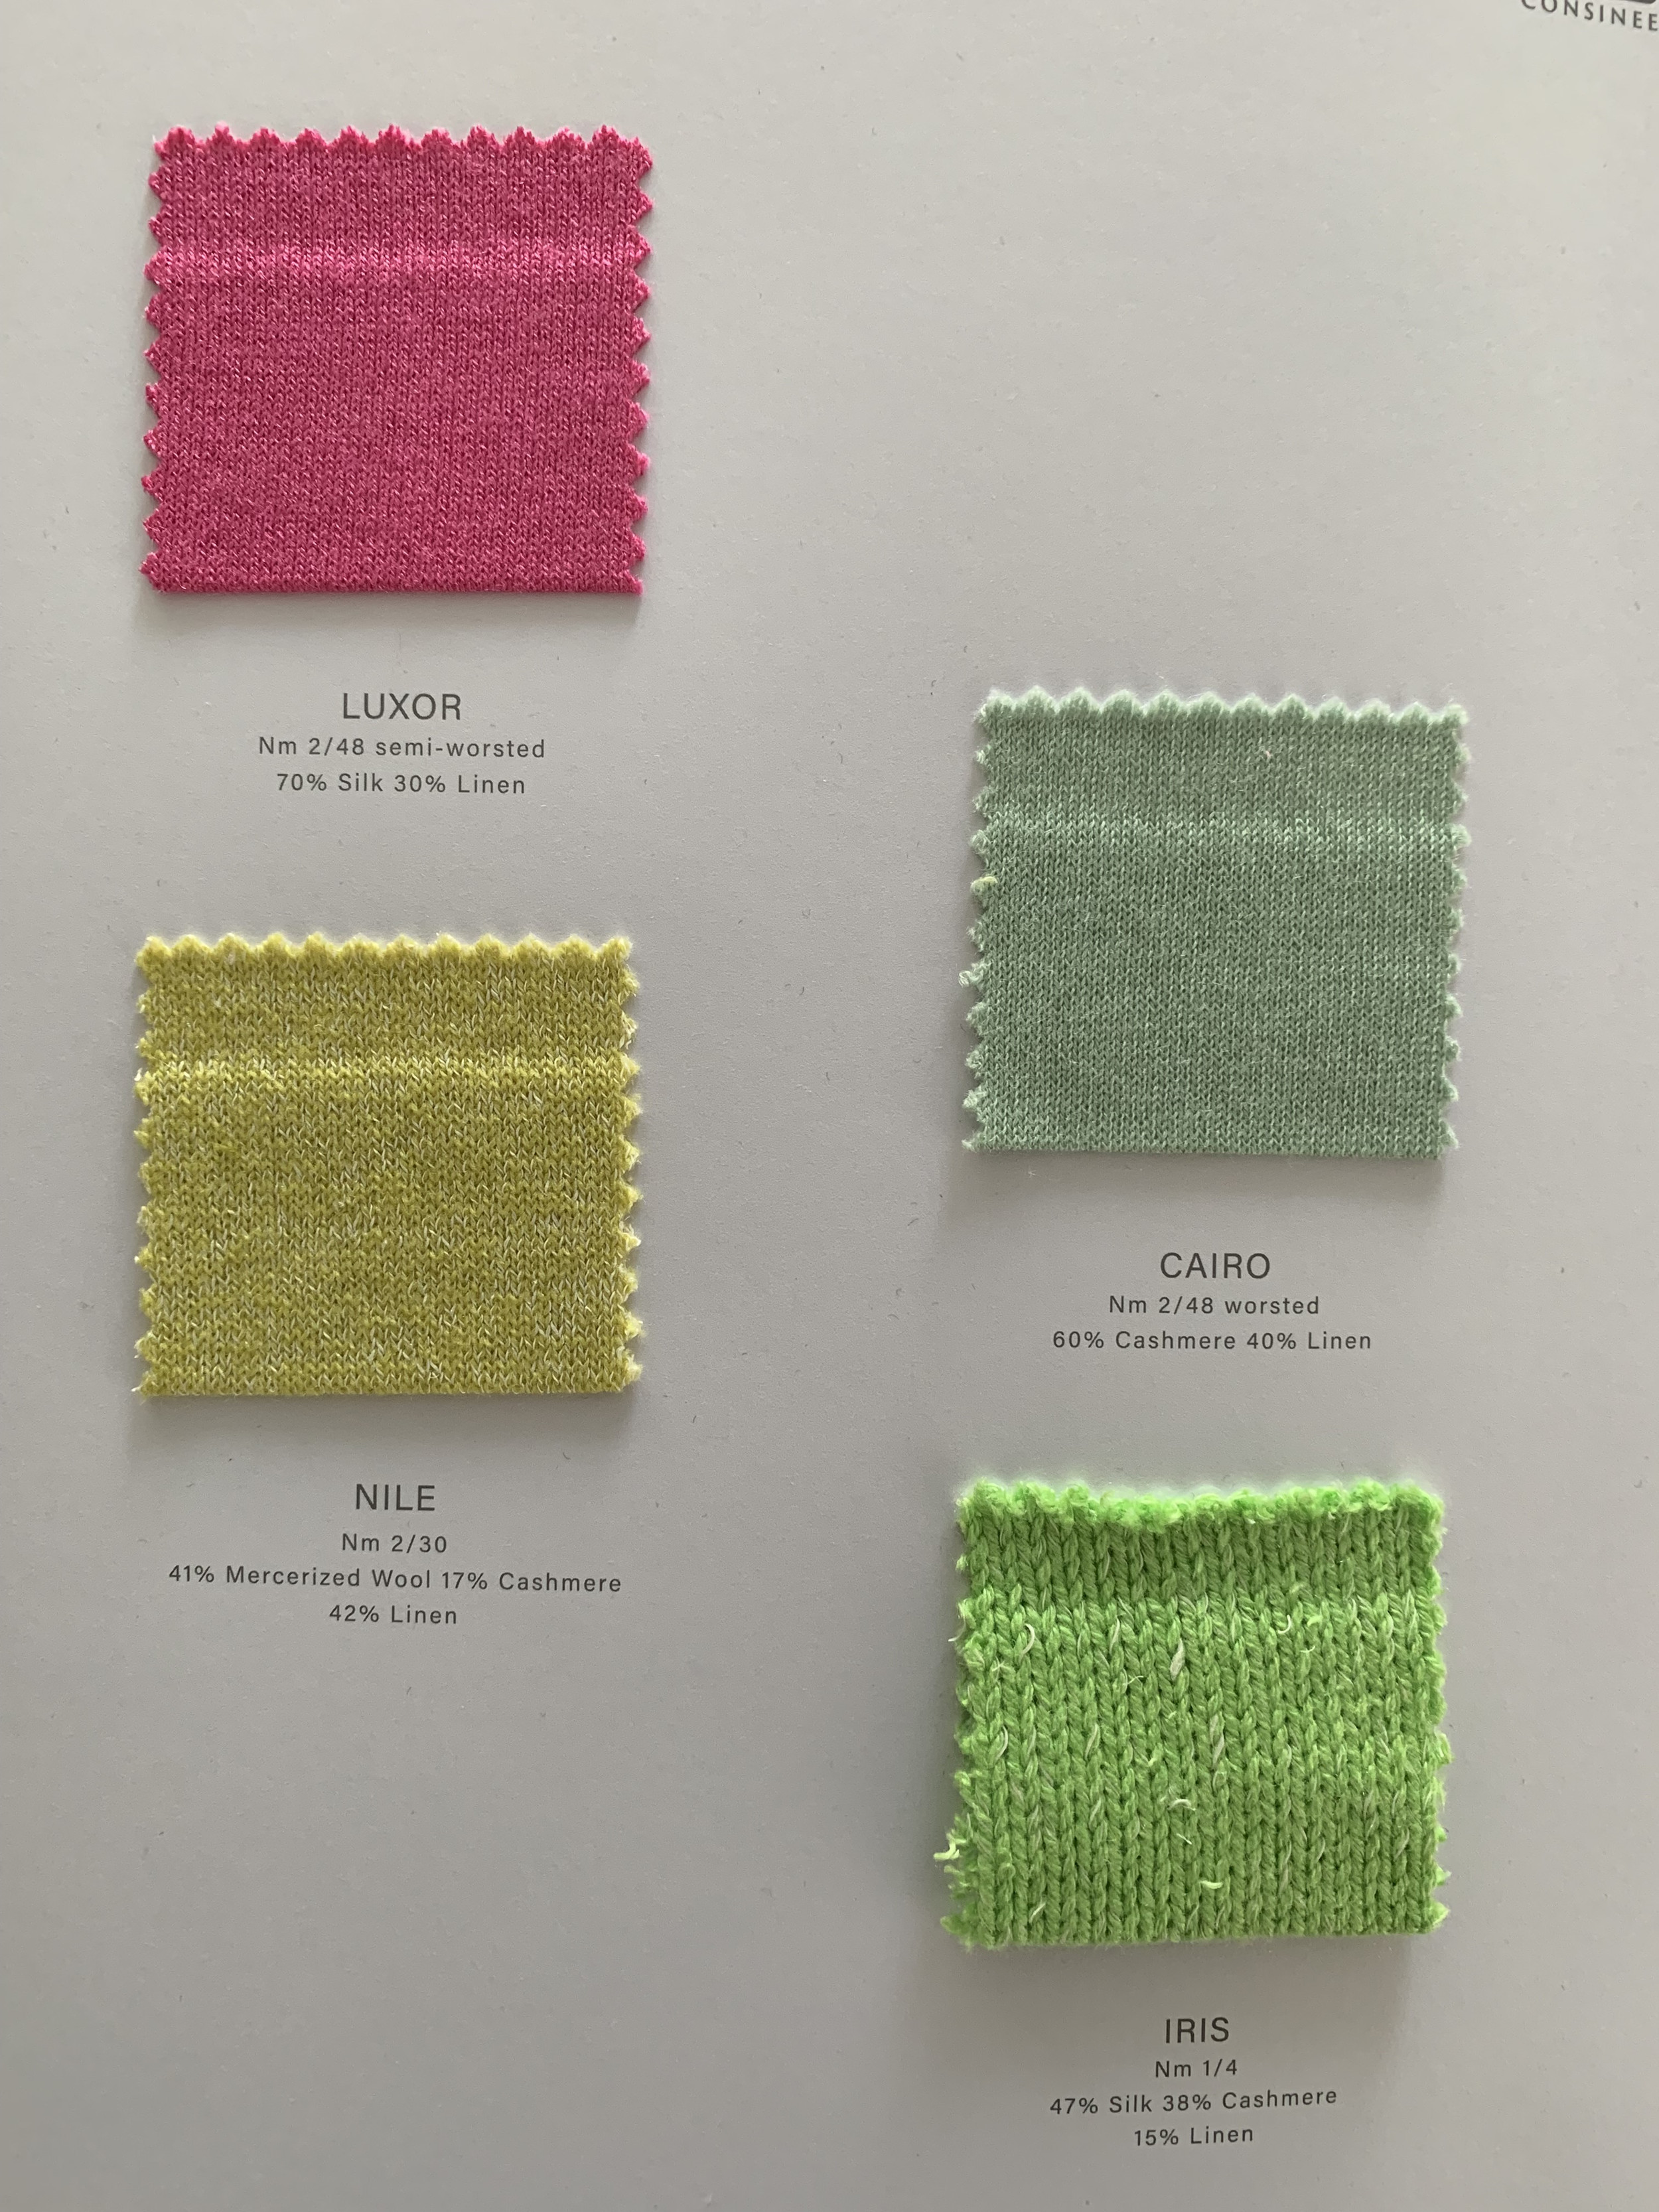 Ewsca spring cashmere combina tarjetas de colores con todos los materiales